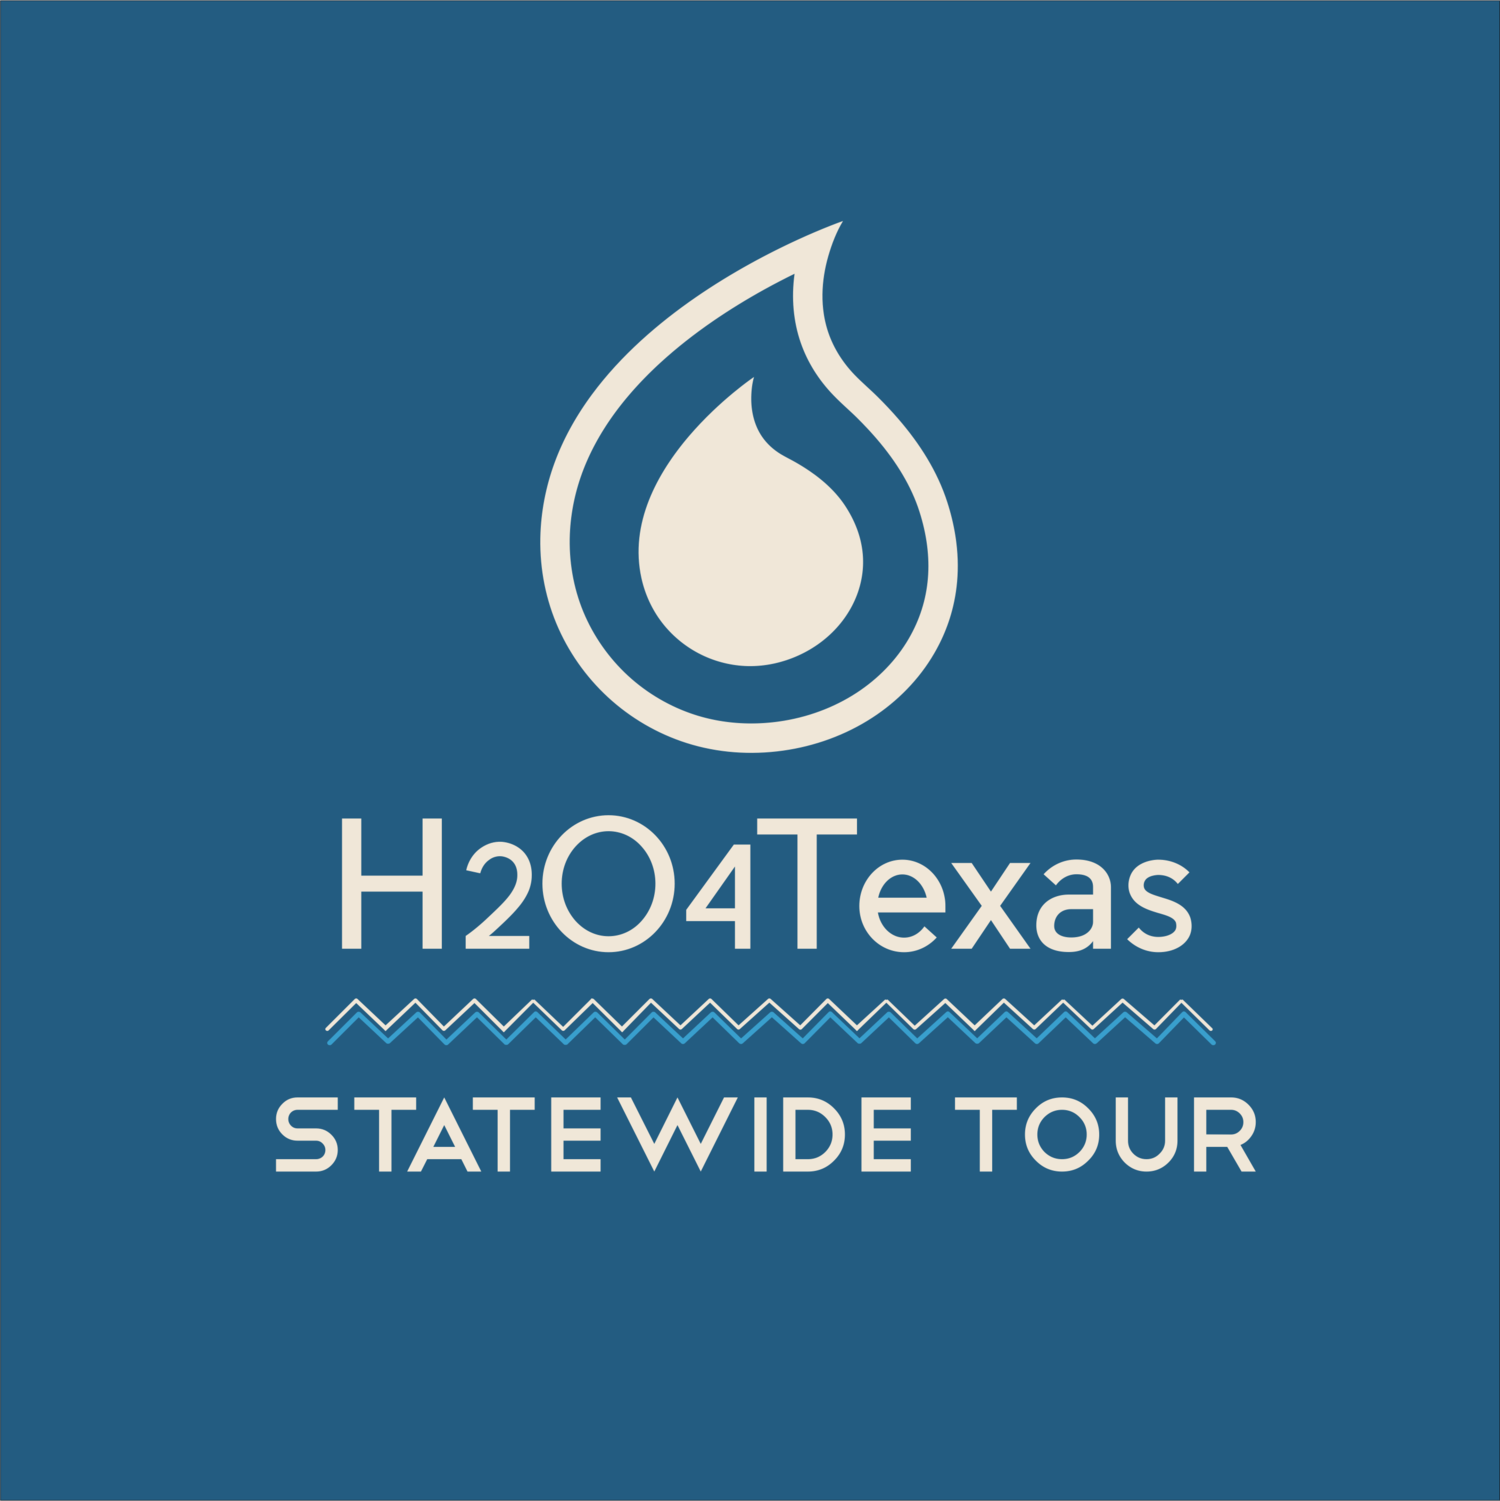 Region M Logo - Region M — H204Texas Statewide Tour